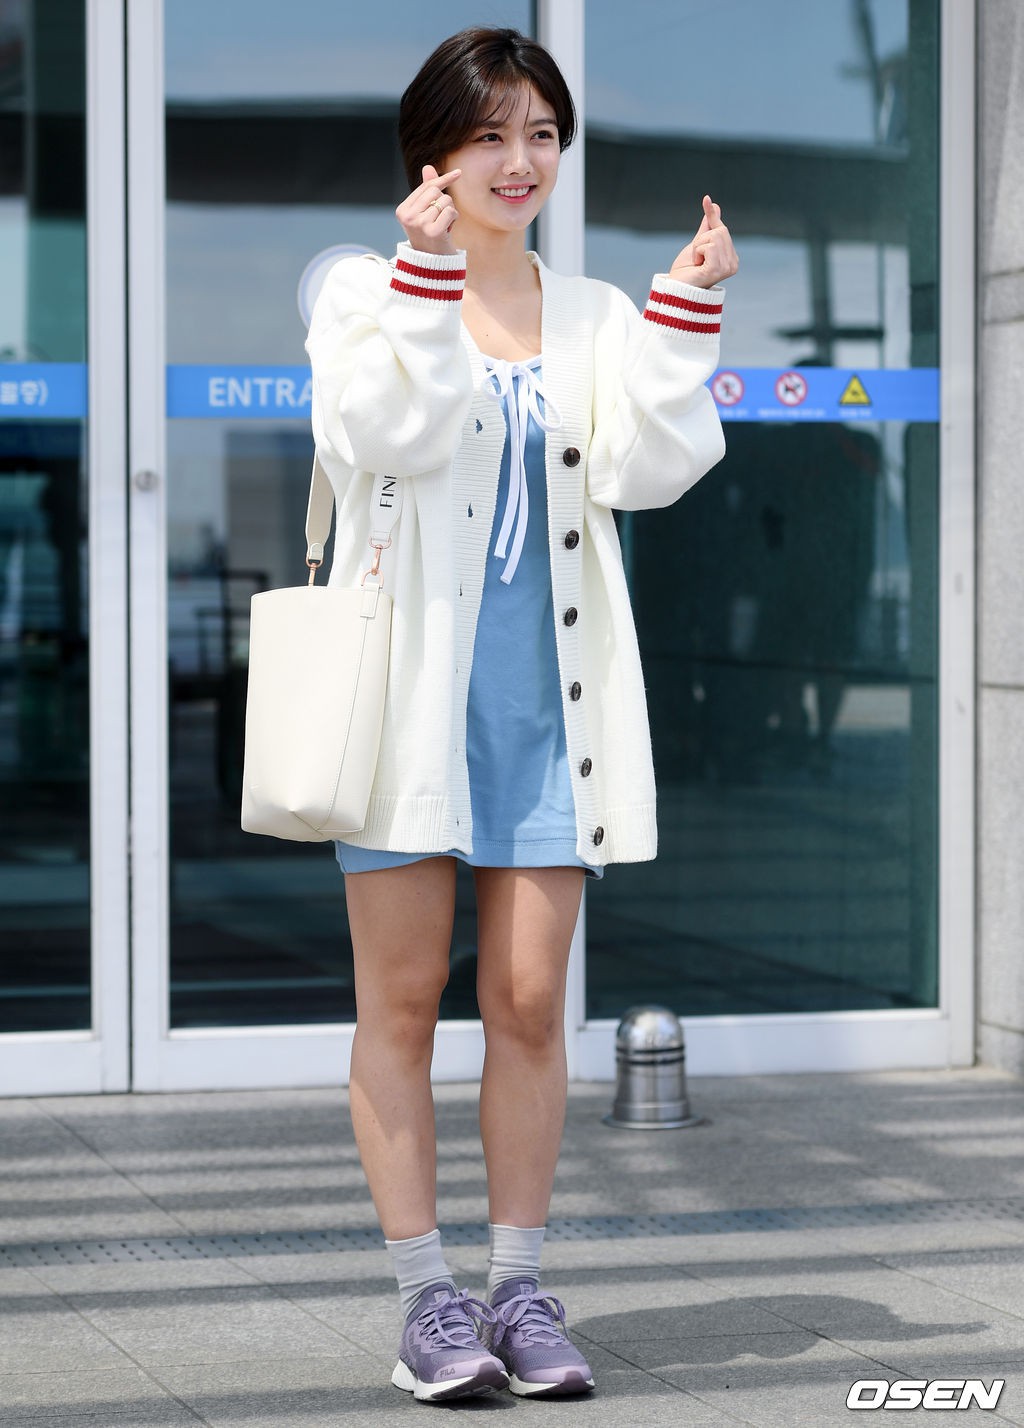 Sao nhí một thời Kim Yoo Jung quá xinh sau khi cắt tóc, Song Hye Kyo gây chú ý vì liên tục che bụng tại sân bay - Ảnh 5.